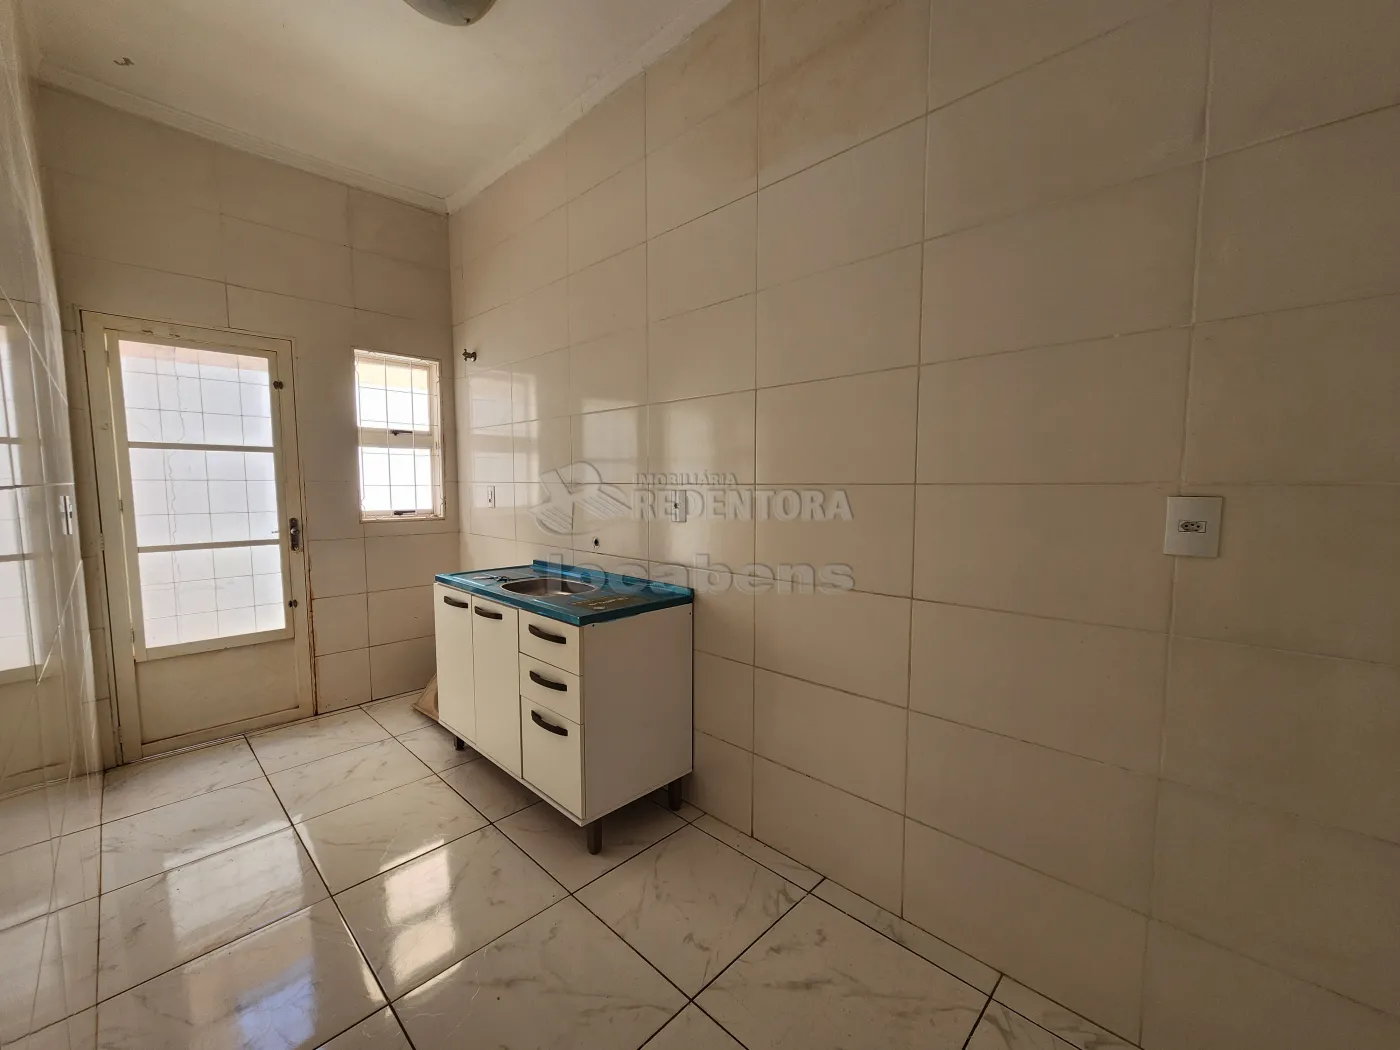 Alugar Casa / Padrão em São José do Rio Preto R$ 980,00 - Foto 12